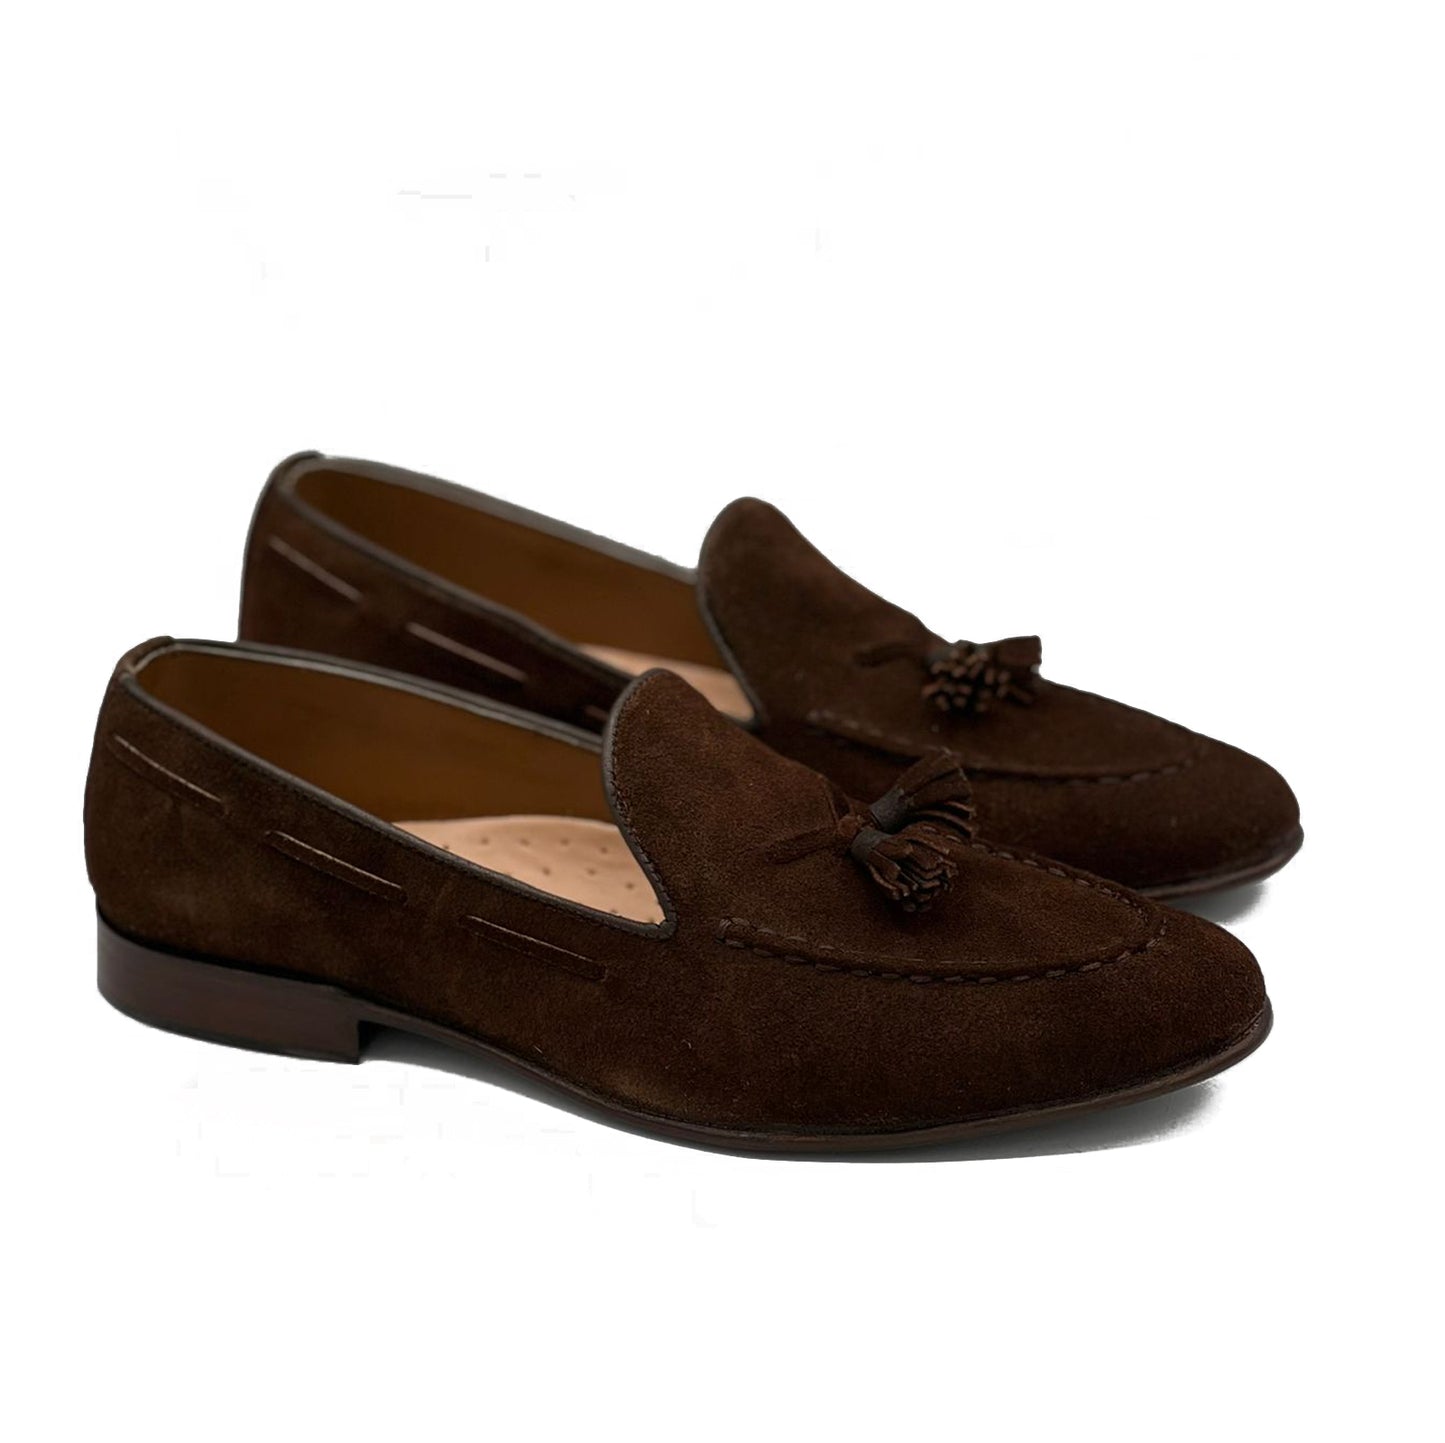 SKU: 8001-Brown Suede Shoes Formal